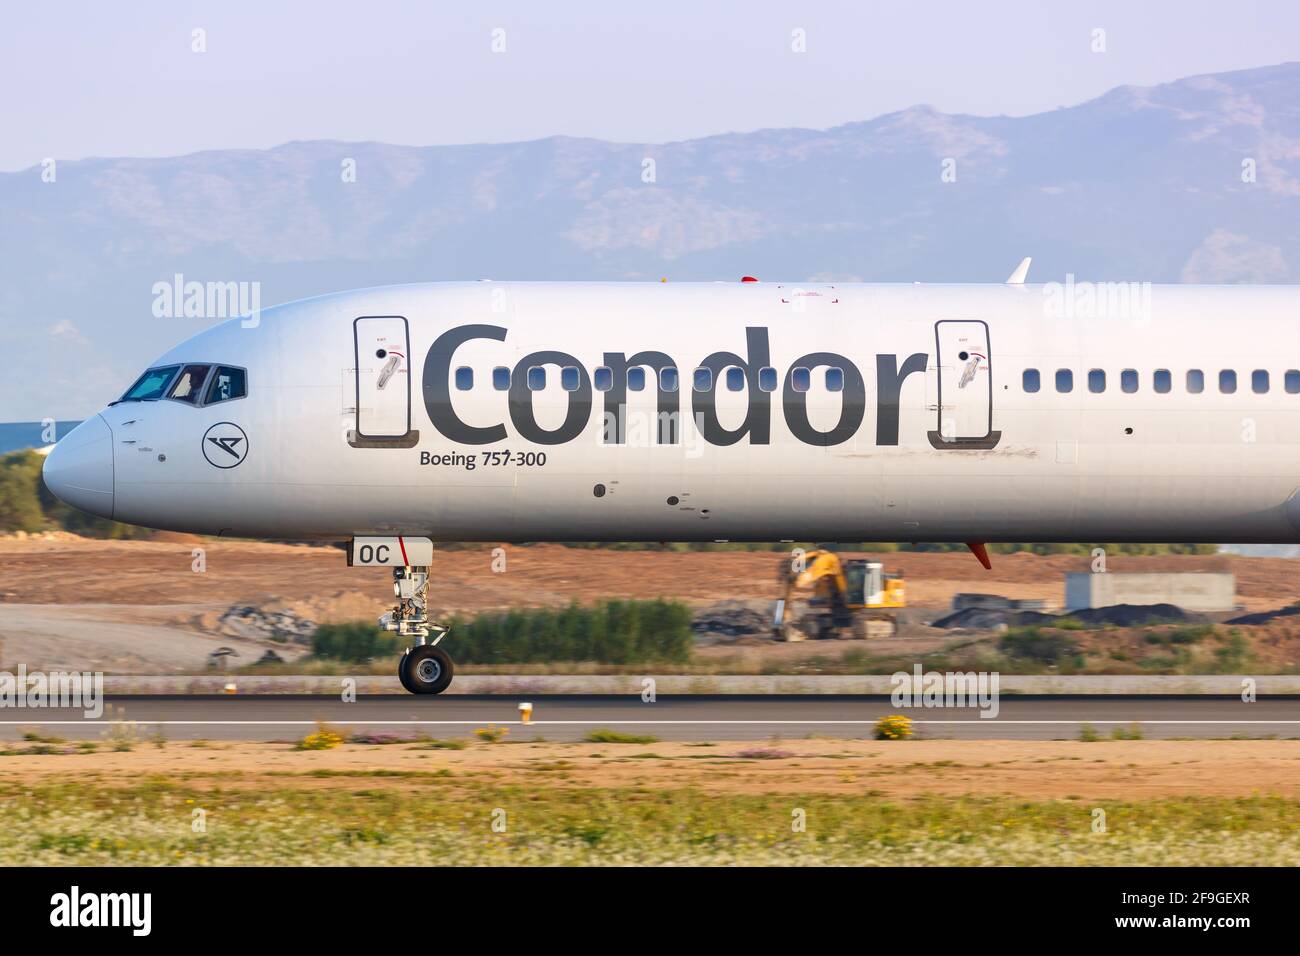 Palma de Mallorca, Spain - May 11, 2018: Condor Boeing 757 airplane at Palma de Mallorca Airport (PMI) in Spain. Boeing is an aircraft manufacturer ba Stock Photo